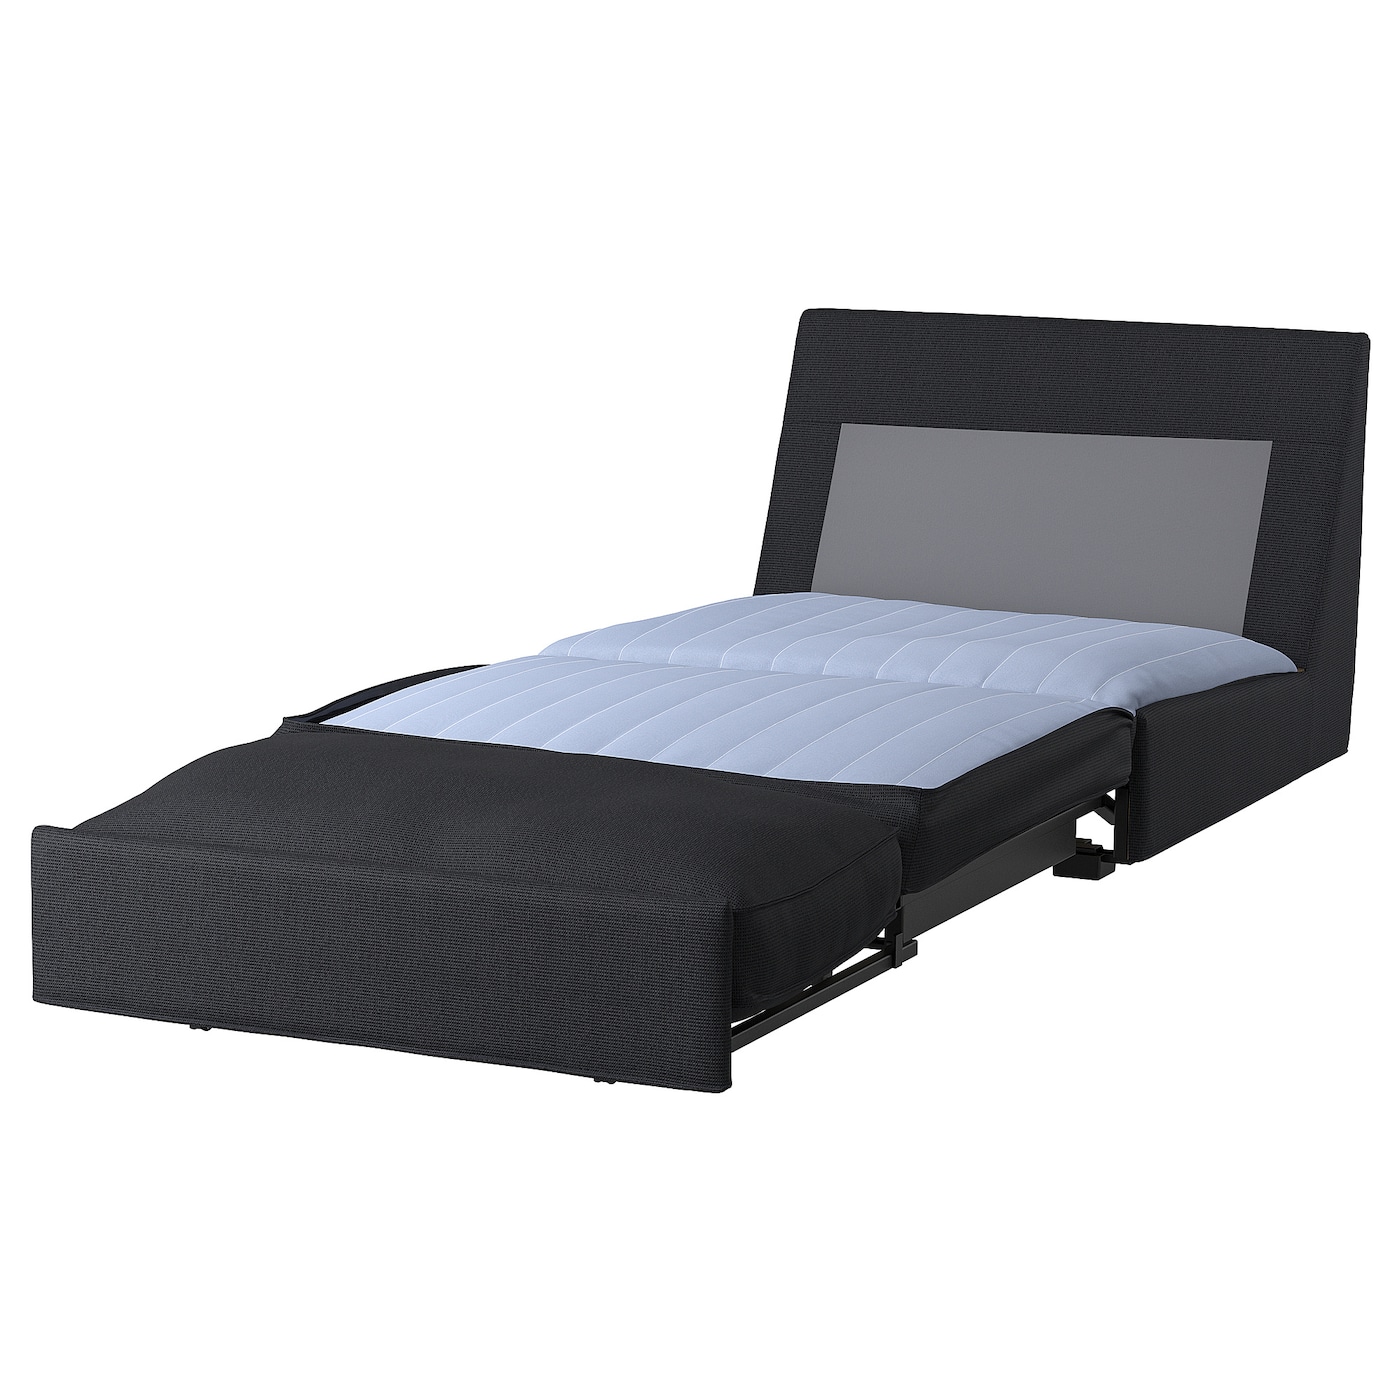 КИВИК 1 диван-кровать с откидной спинкой, Тресунд антрацит KIVIK IKEA диван кровать дилан тд 421